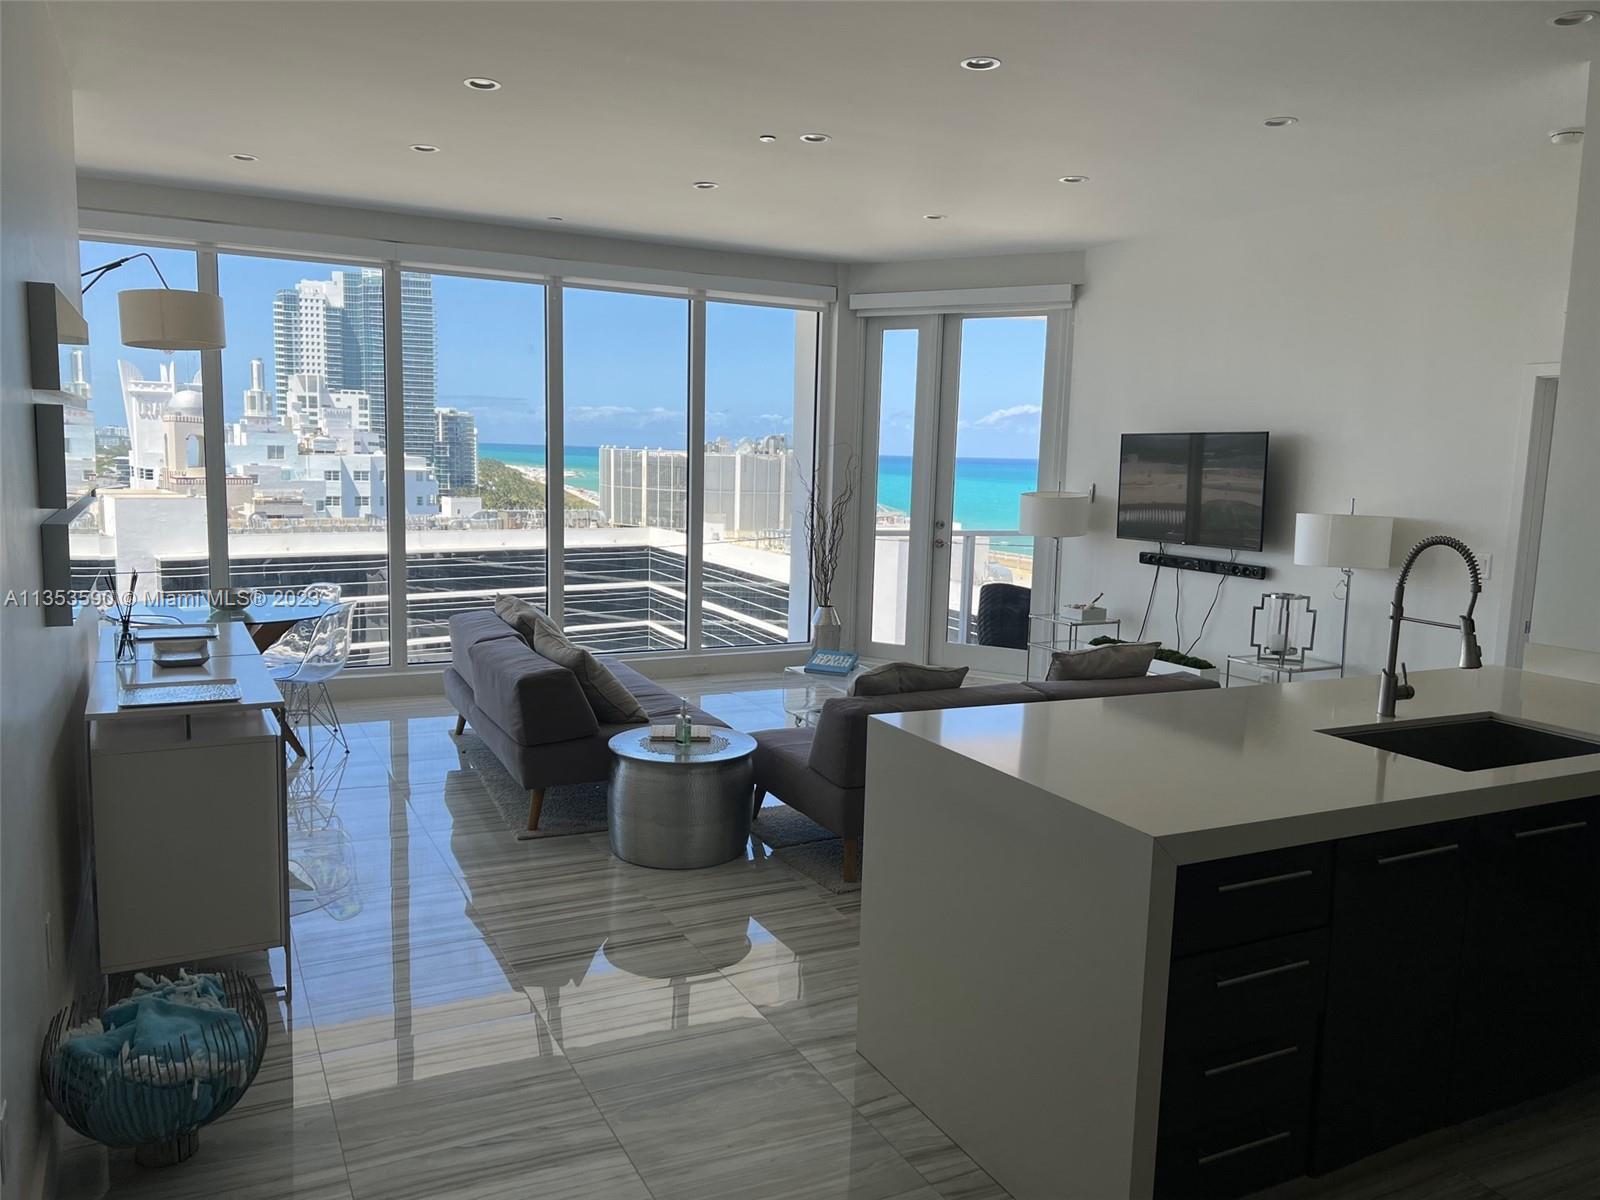 Rental Property at 100 Lincoln Rd Ph9, Miami Beach, Miami-Dade County, Florida - Bedrooms: 2 
Bathrooms: 3  - $9,000 MO.